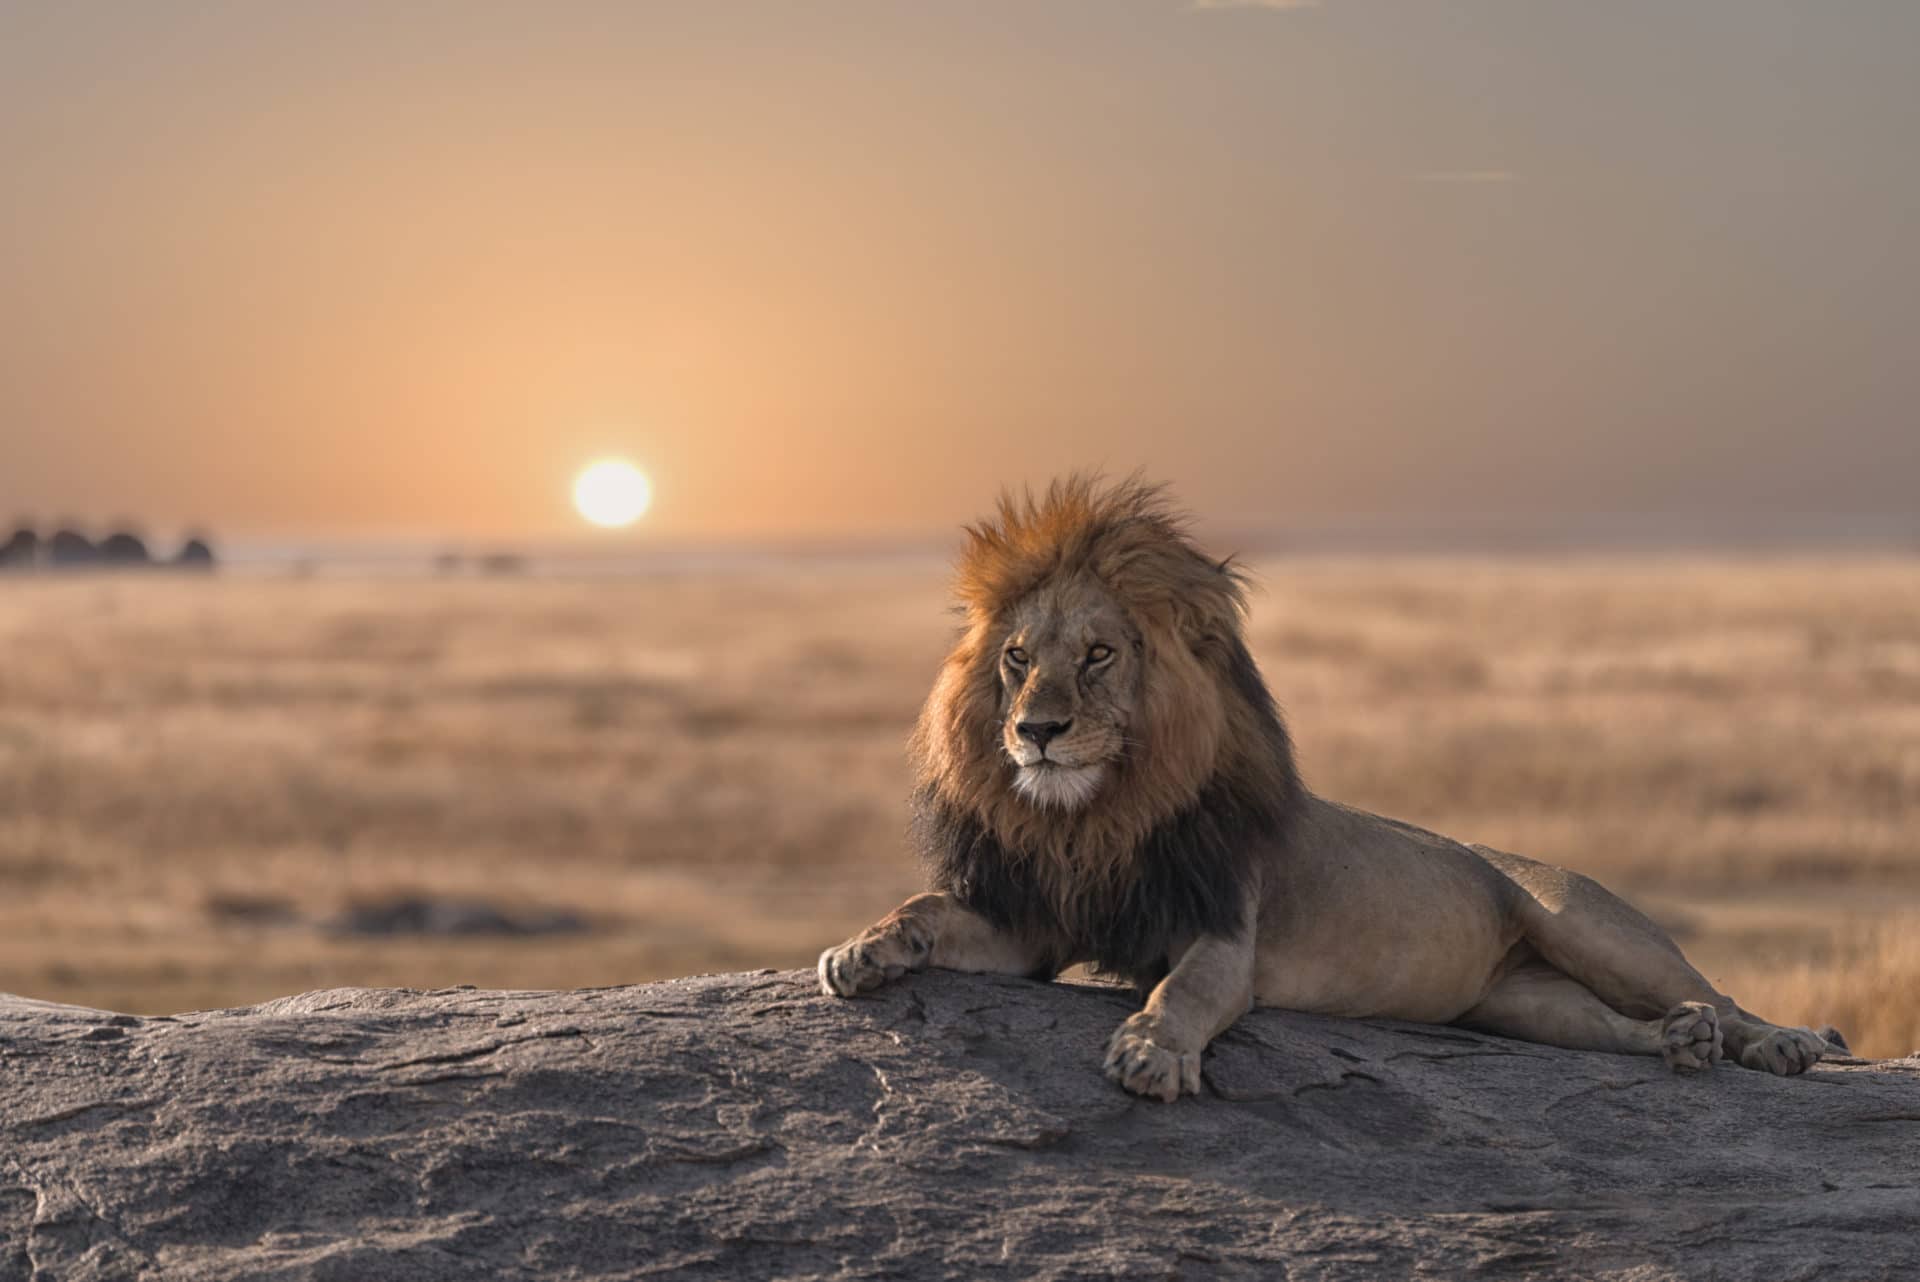 Lion on Safari in Tanzania